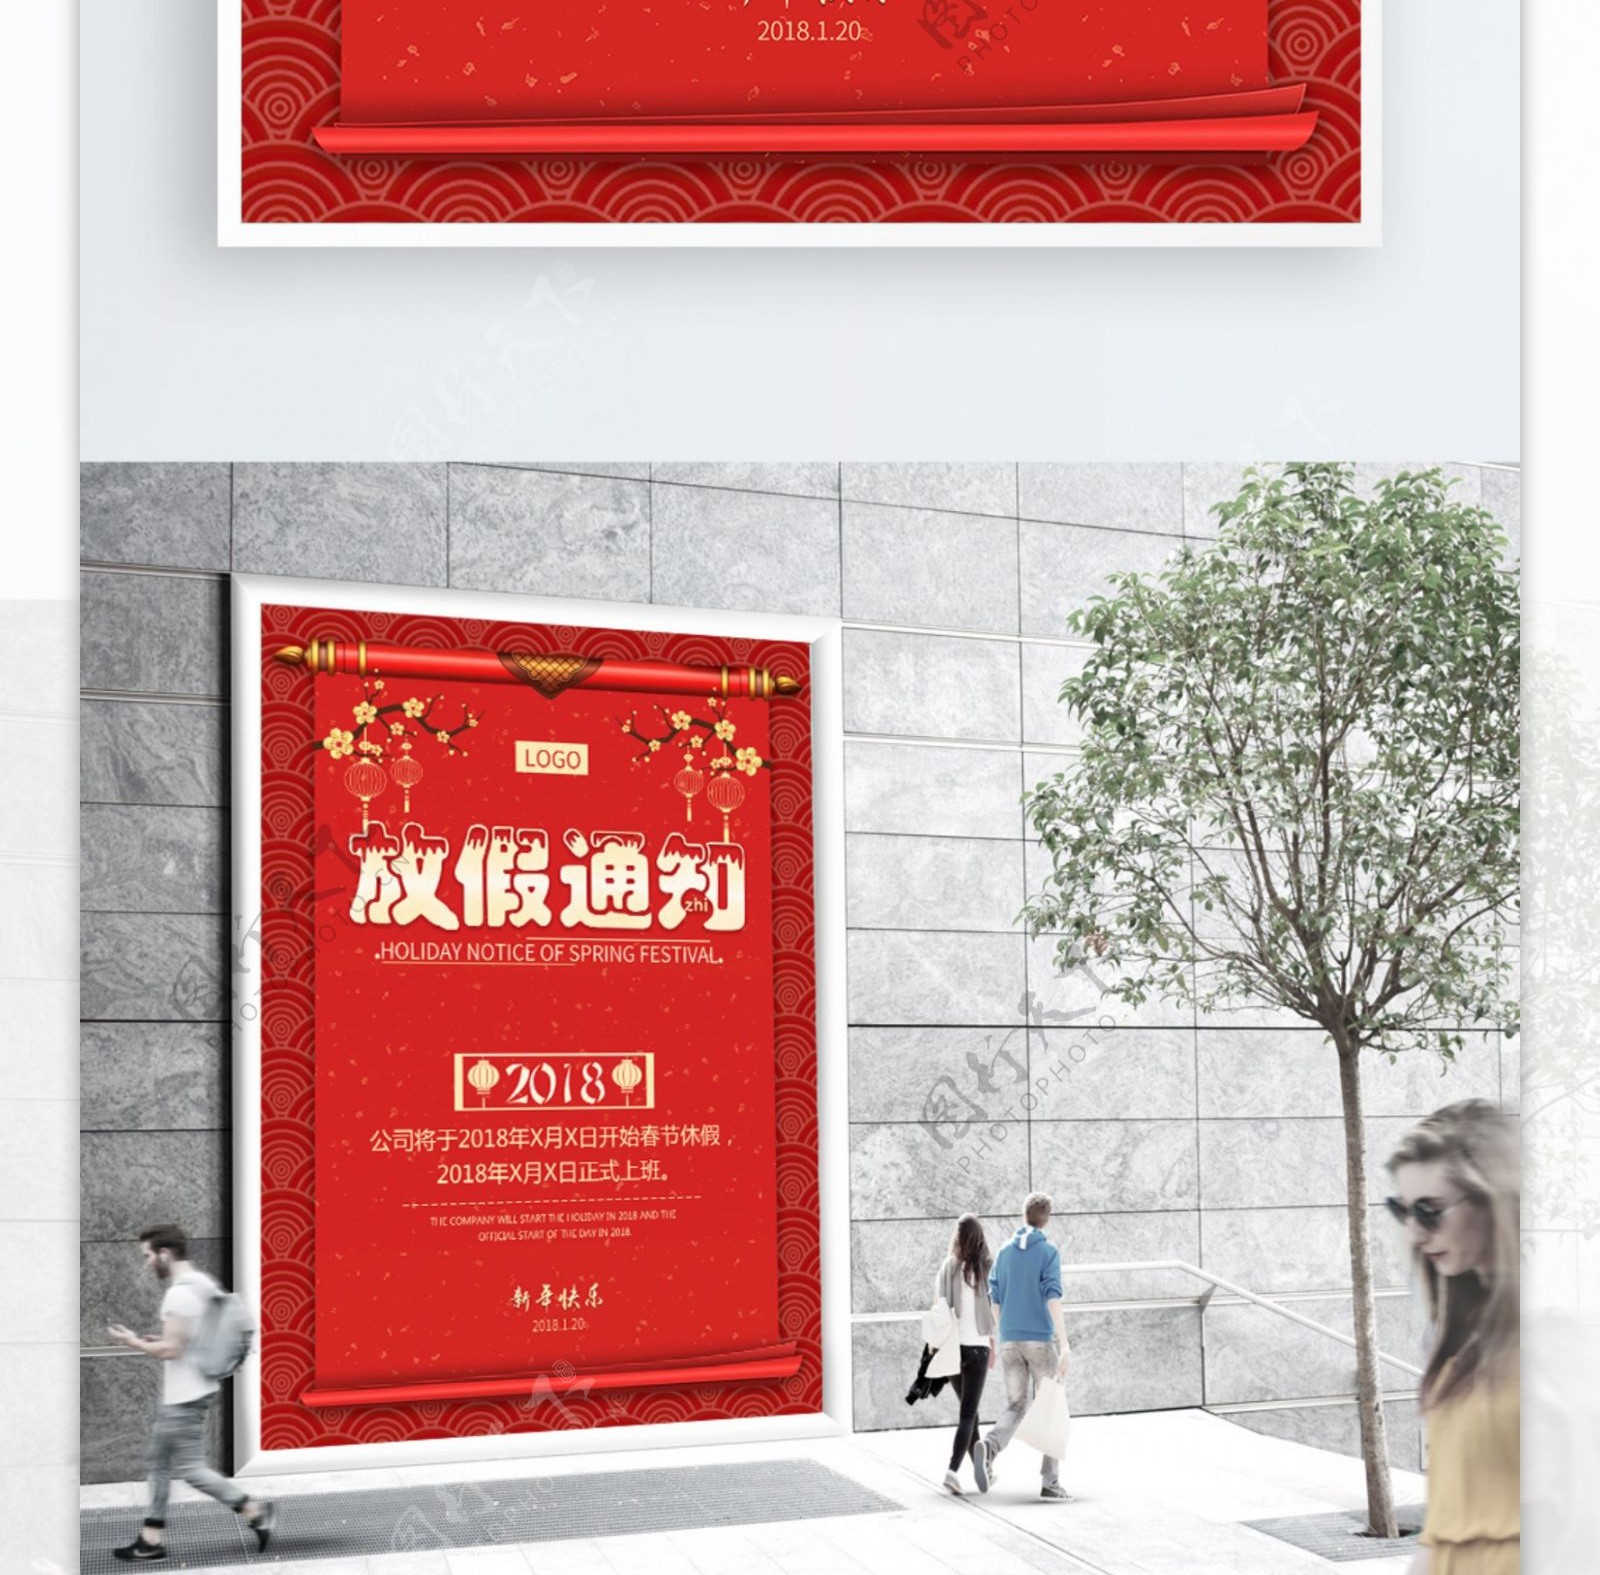 大红喜庆春节放假通知宣传海报